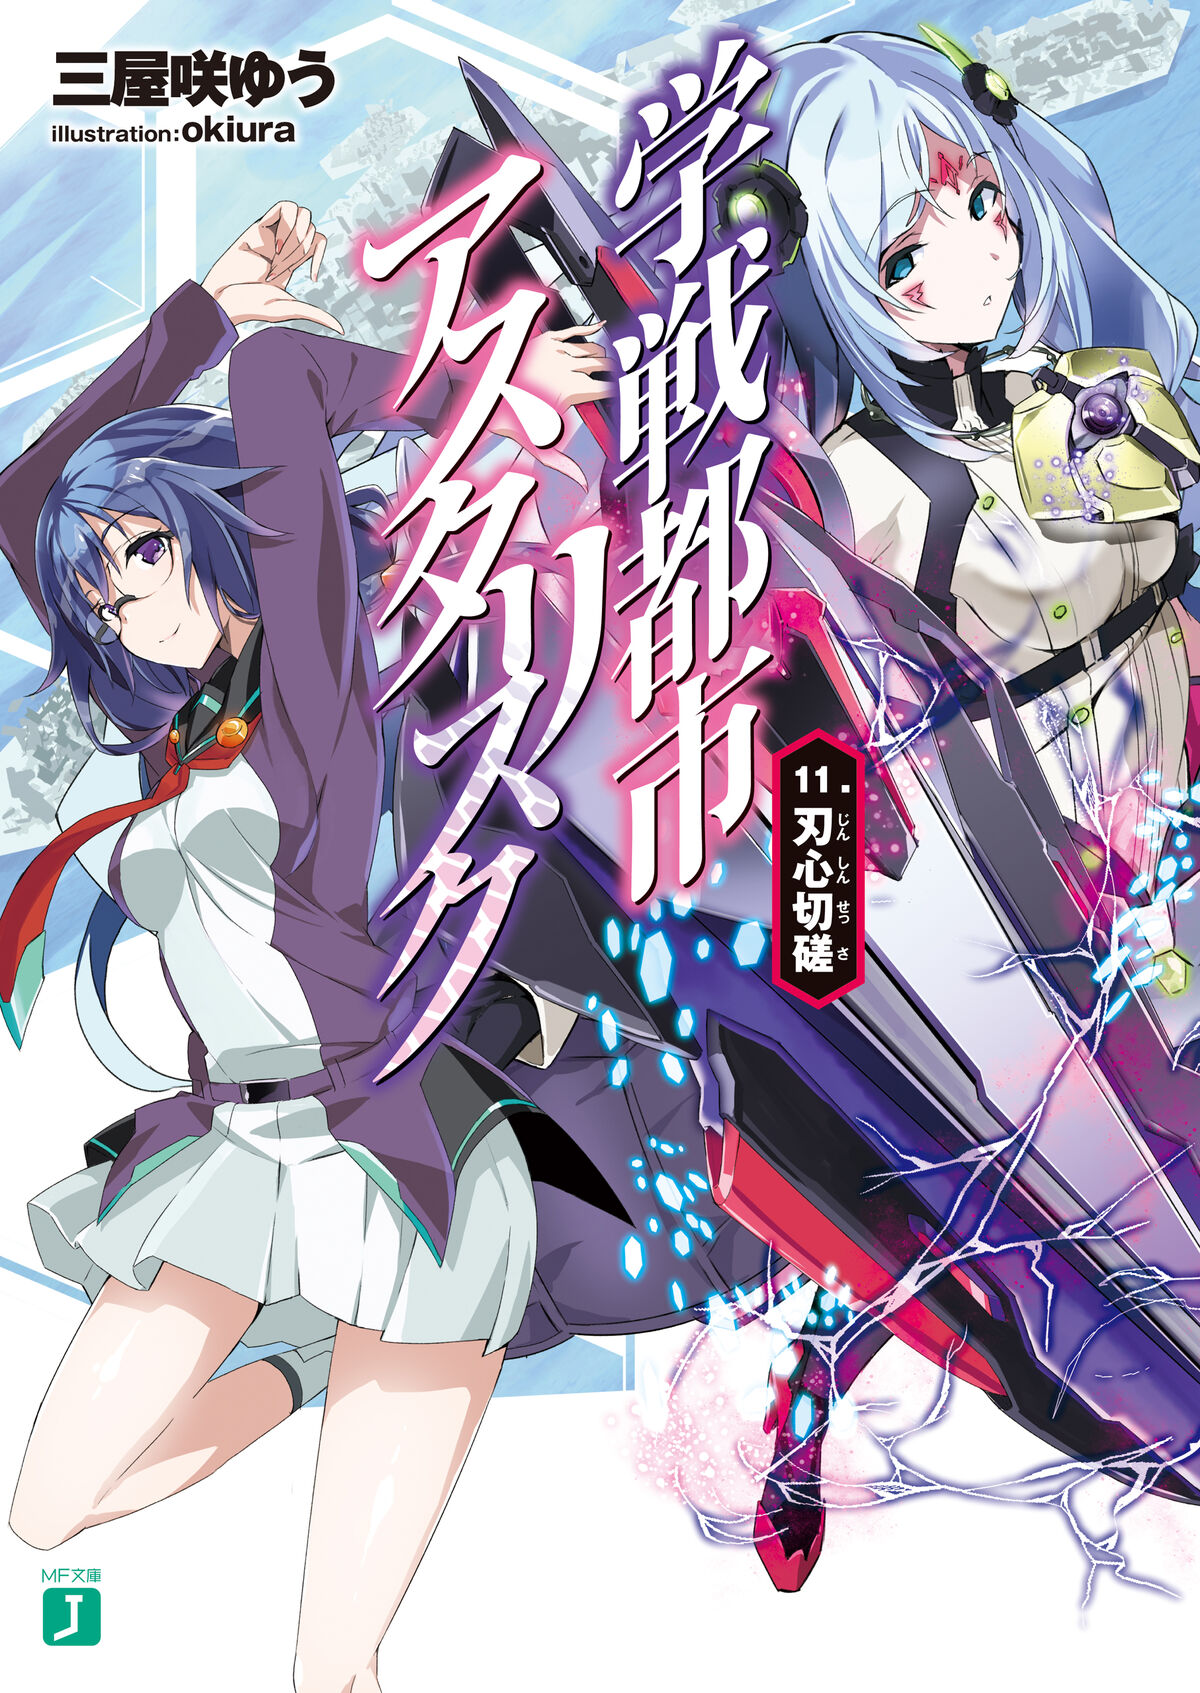 Asterisk Light Novel Volume 12, Gakusen Toshi Asterisk Wiki